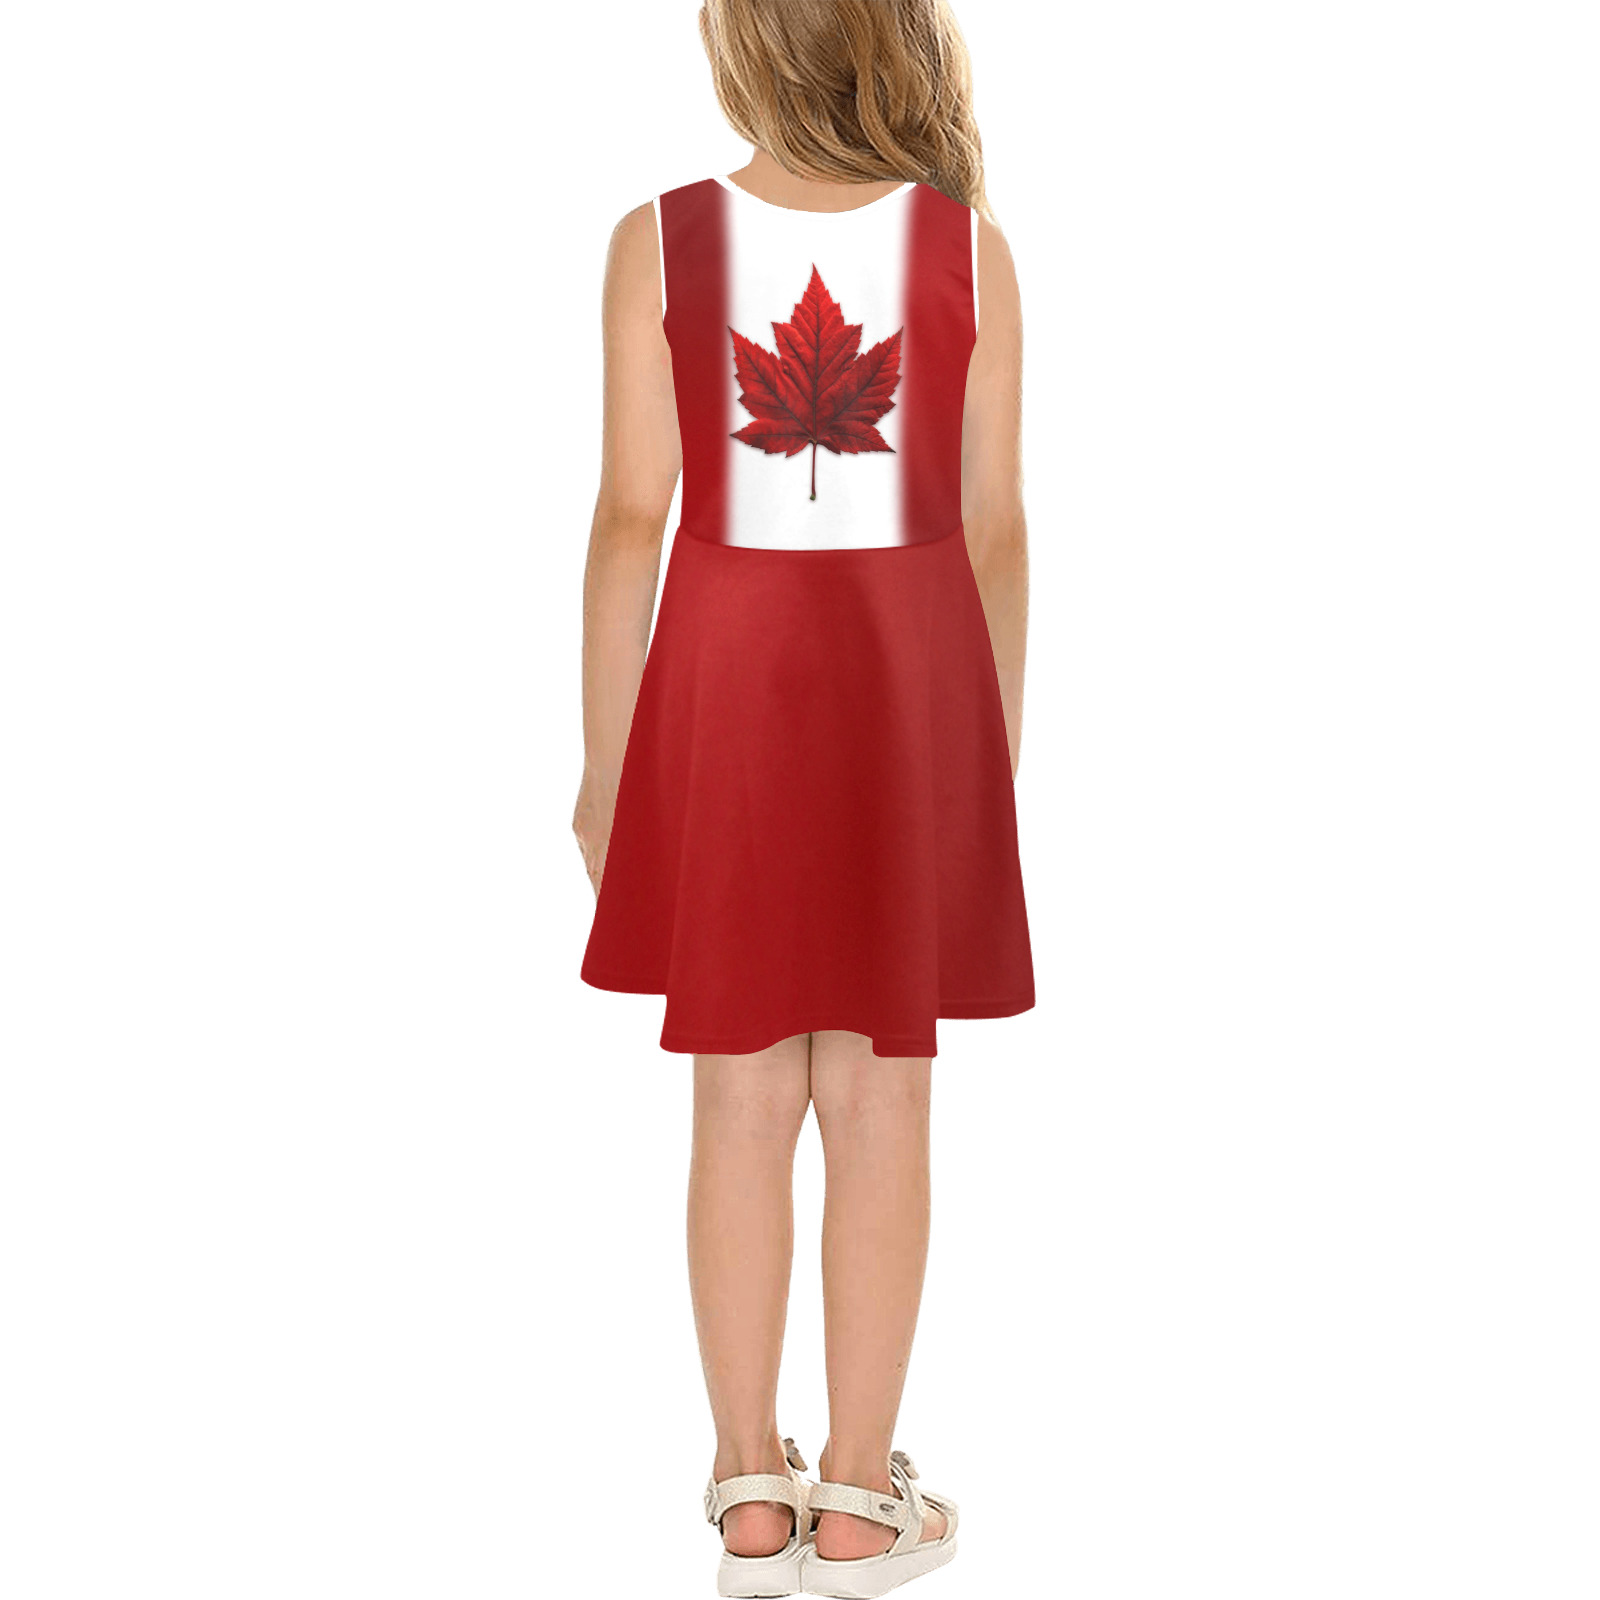 Girl's Canada Flag Dress Girls' Sleeveless Sundress (Model D56)